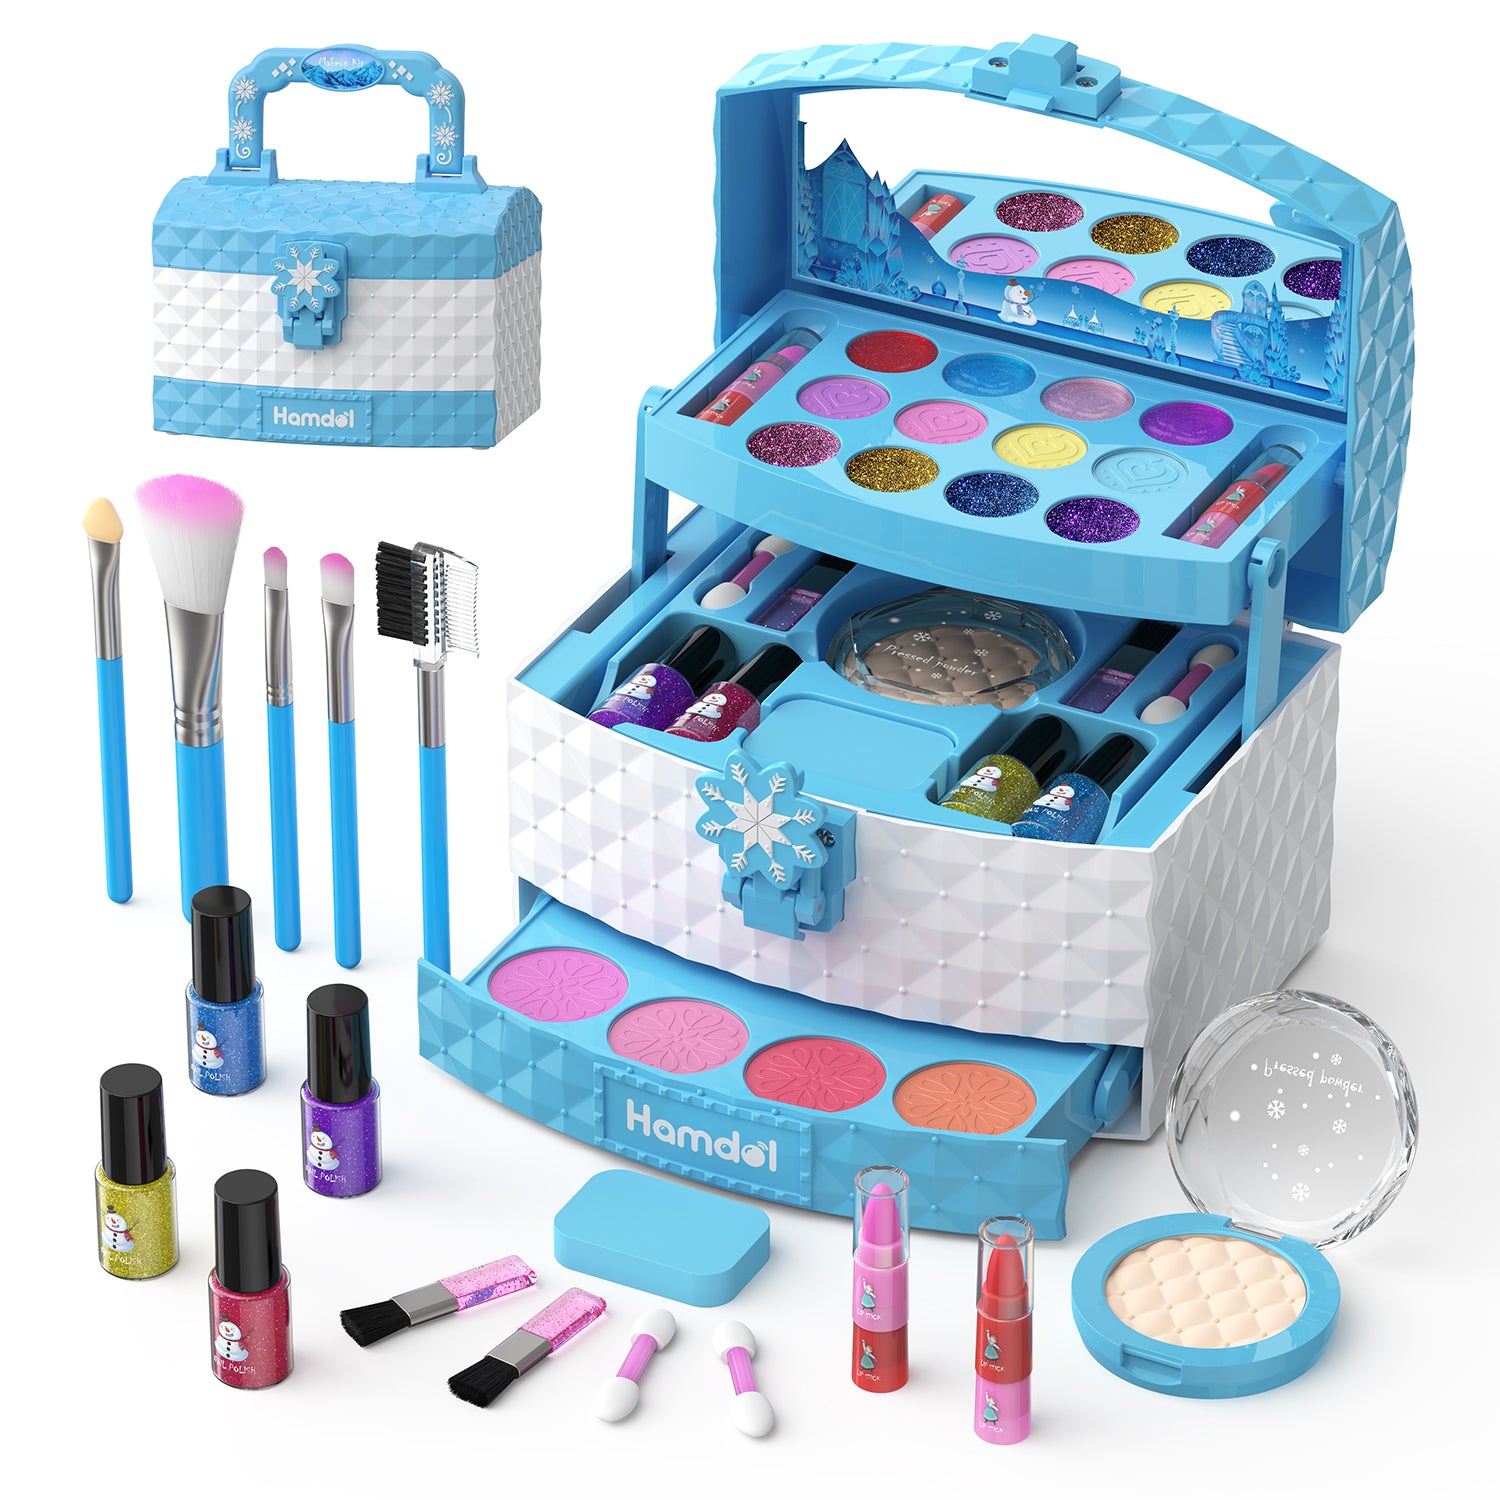 Trapezoid Kids Makeup toys Kit – hamdol